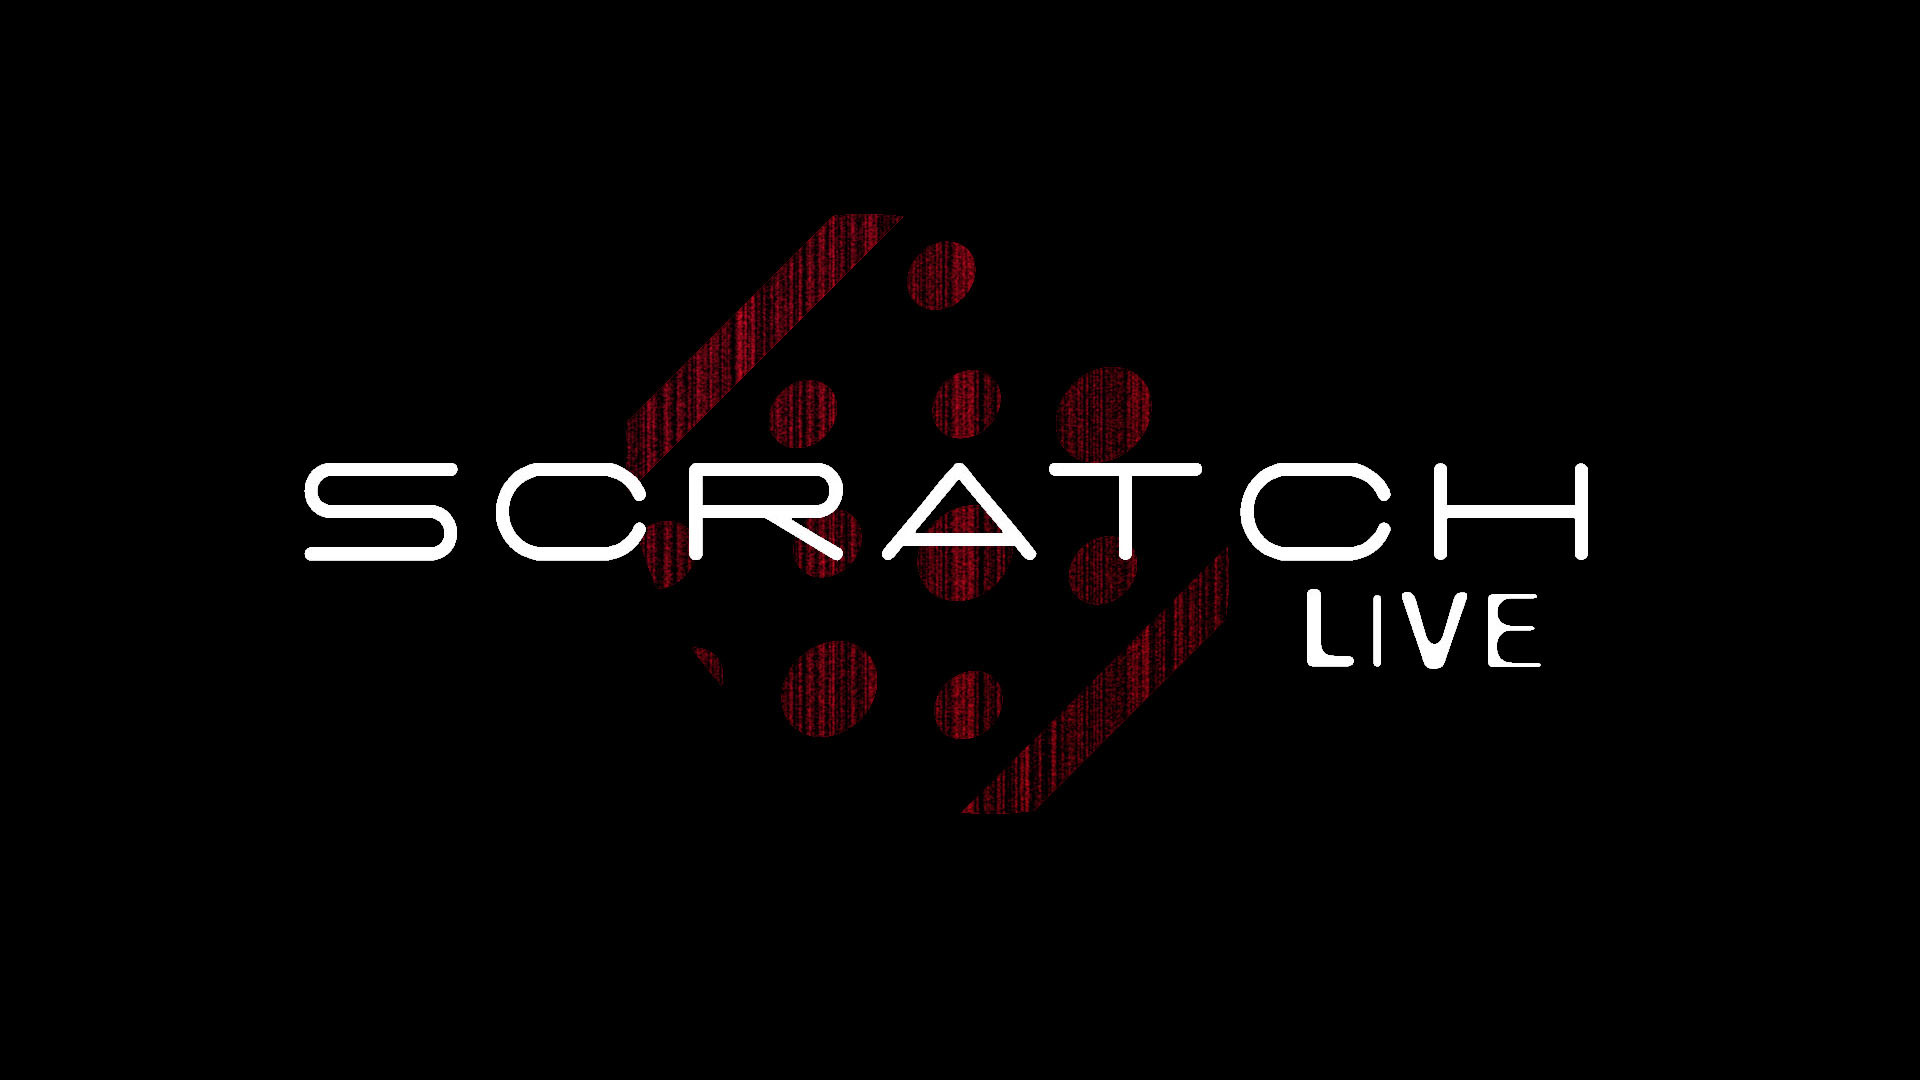 Serato Scratch Live Wallpaper Amp Desktop Pics 1920x1080